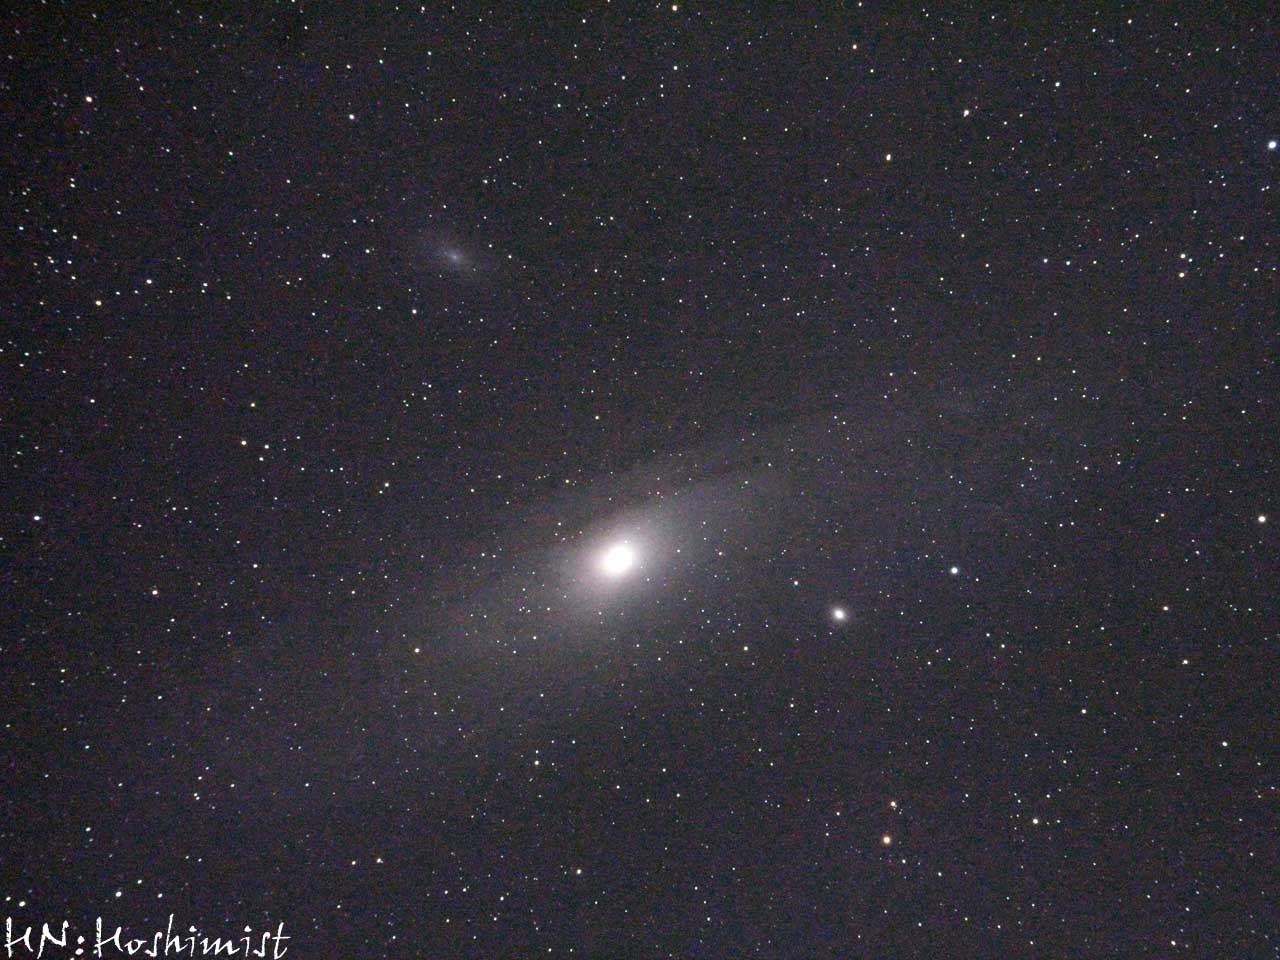 M31アンドロメダ銀河 動画に出てくる星雲星団の紹介その1 ホシミスト3013の天体撮影記 楽天ブログ